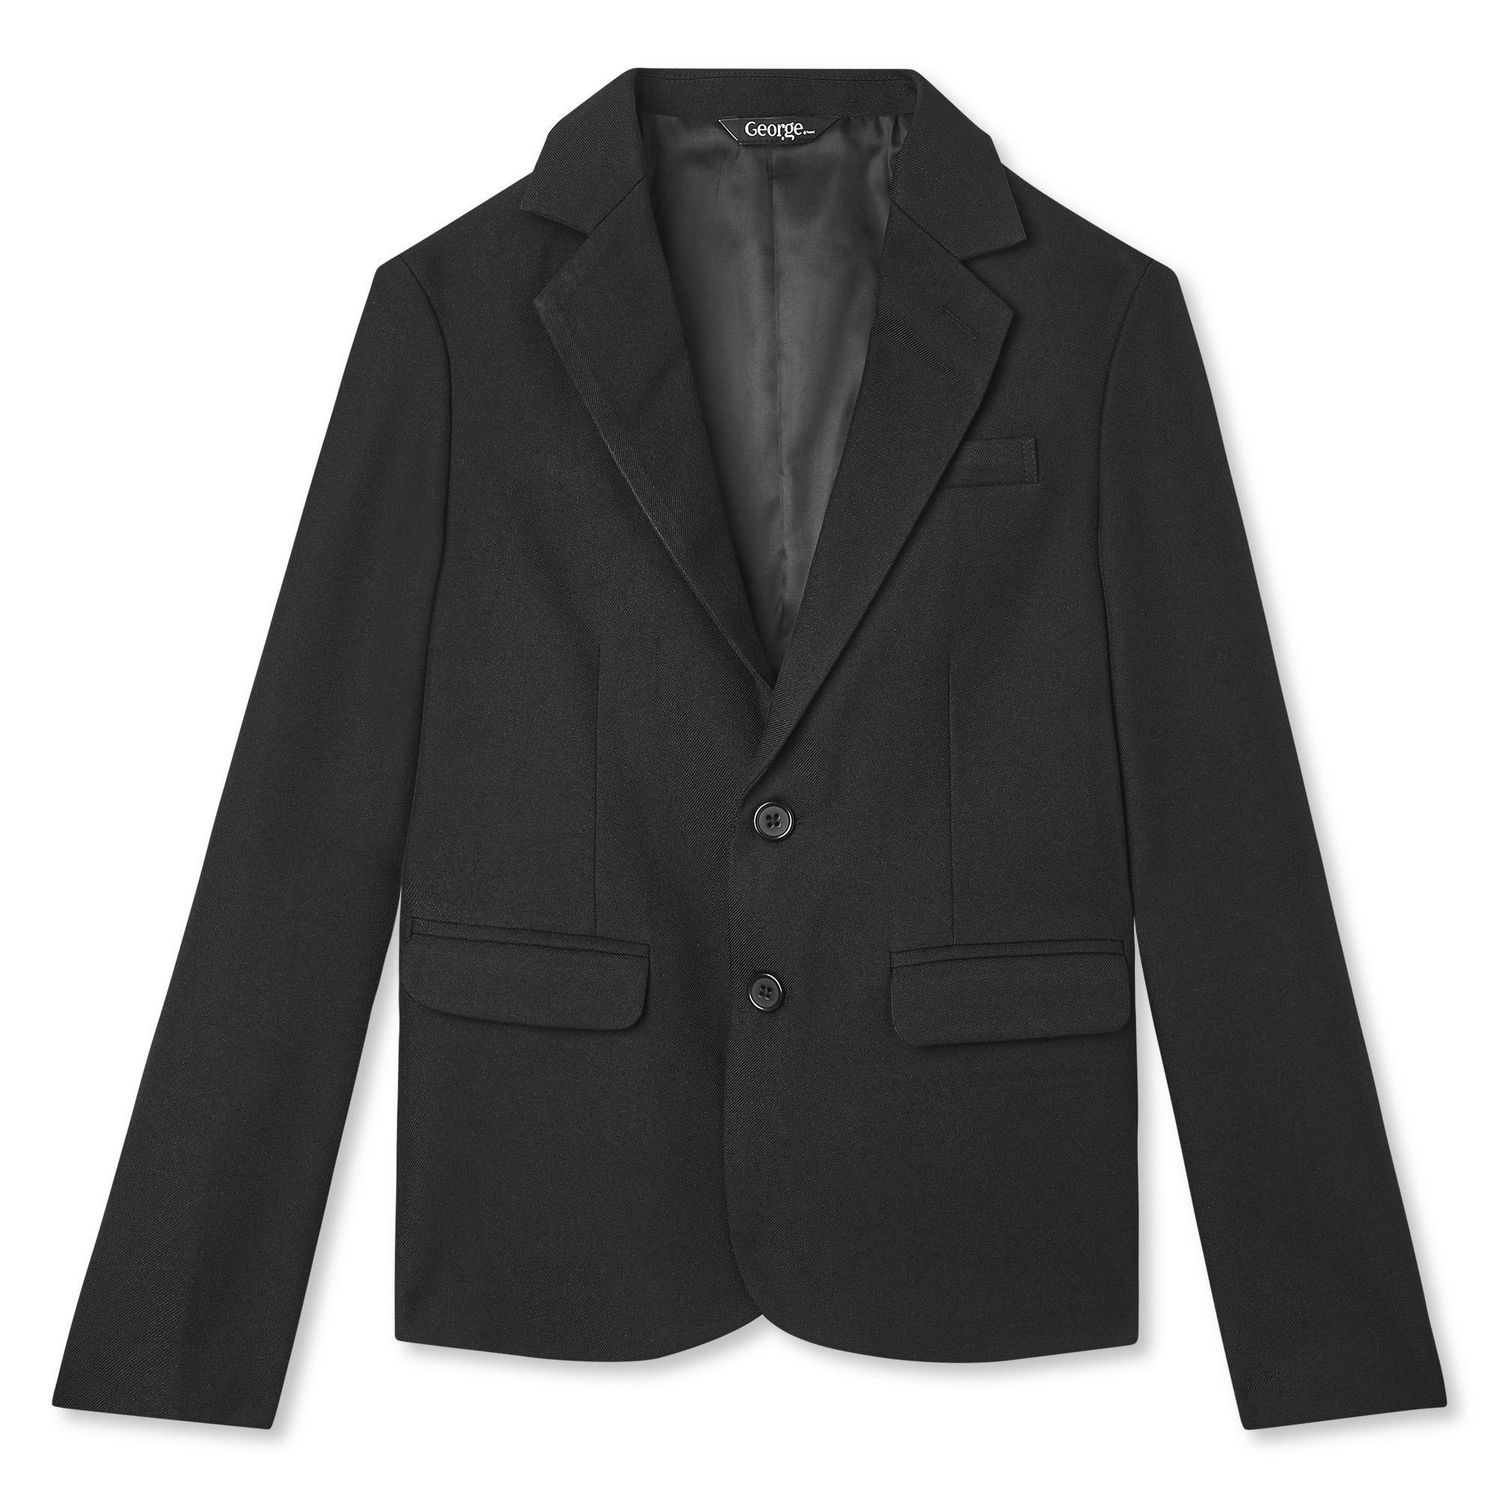 George Boys' Suit Jacket, Sizes 4-16 